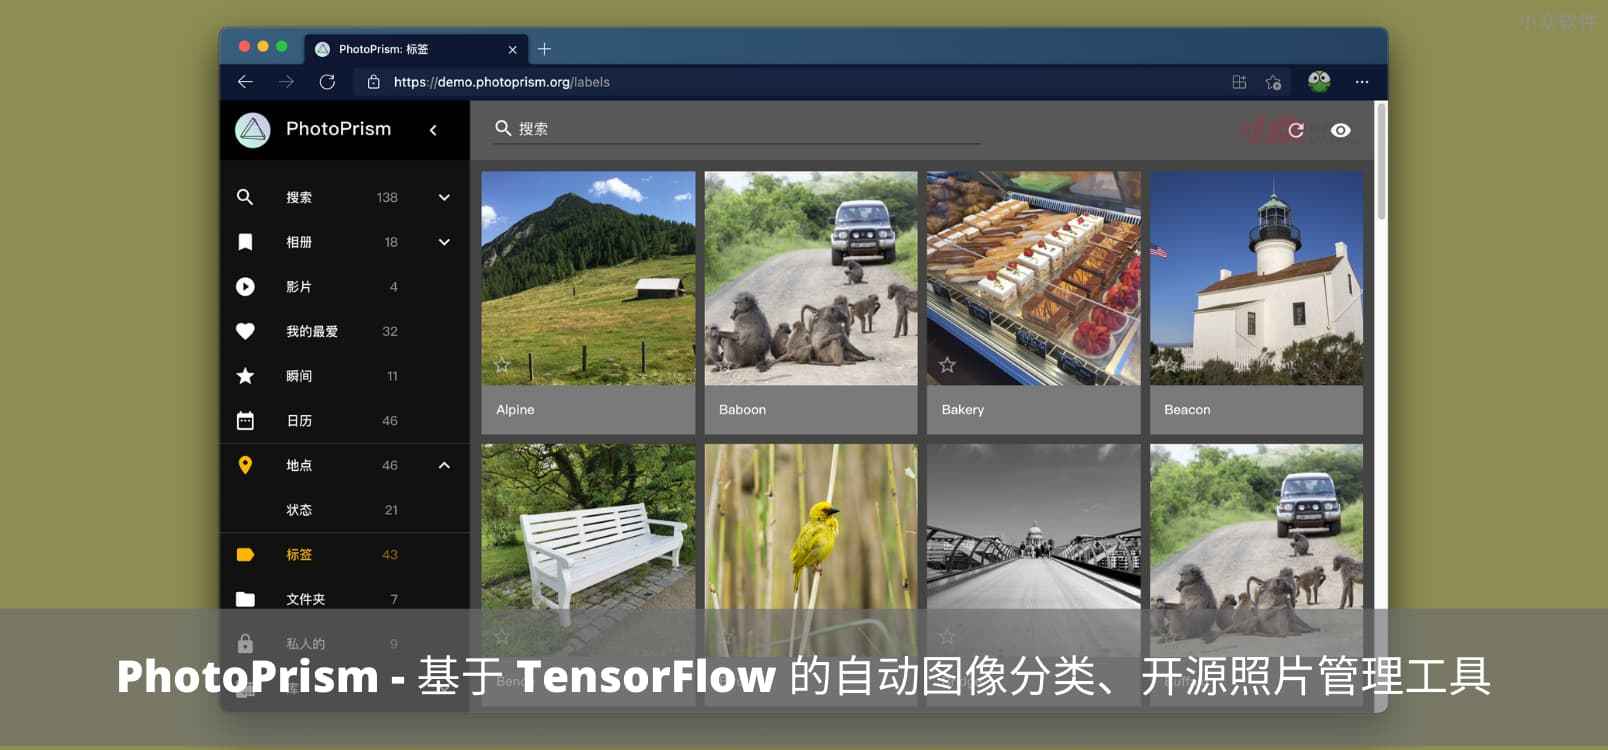 PhotoPrism – 可私有部署，基于机器学习 TensorFlow 的图像自动分类、开源照片管理工具，类本地化 Google Photos 服务